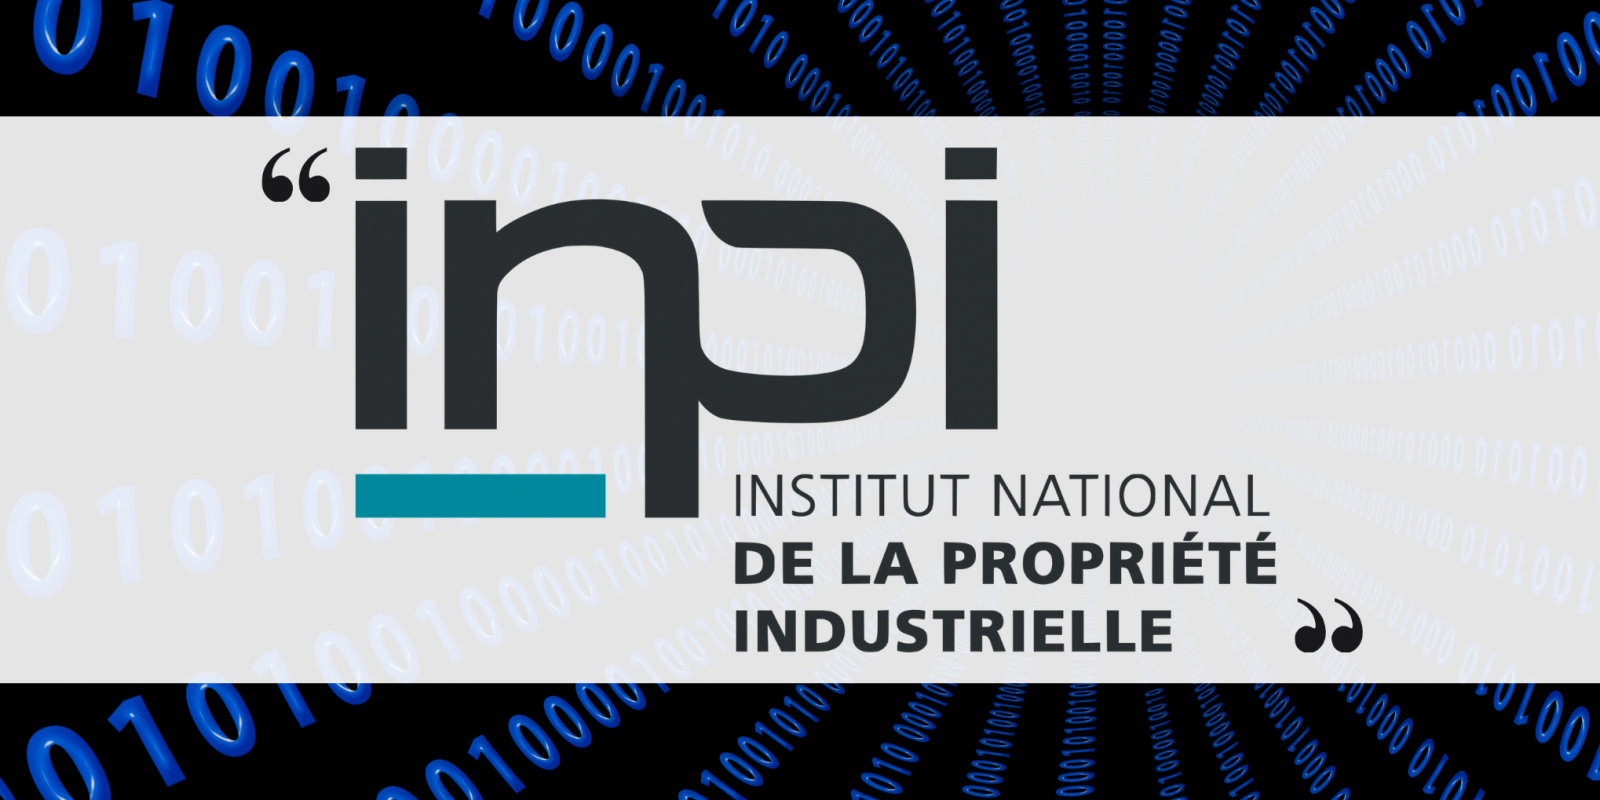 Extraction de données chiffrées et text-mining à l’échelle industrielle dans le cadre du projet INPI RNCS